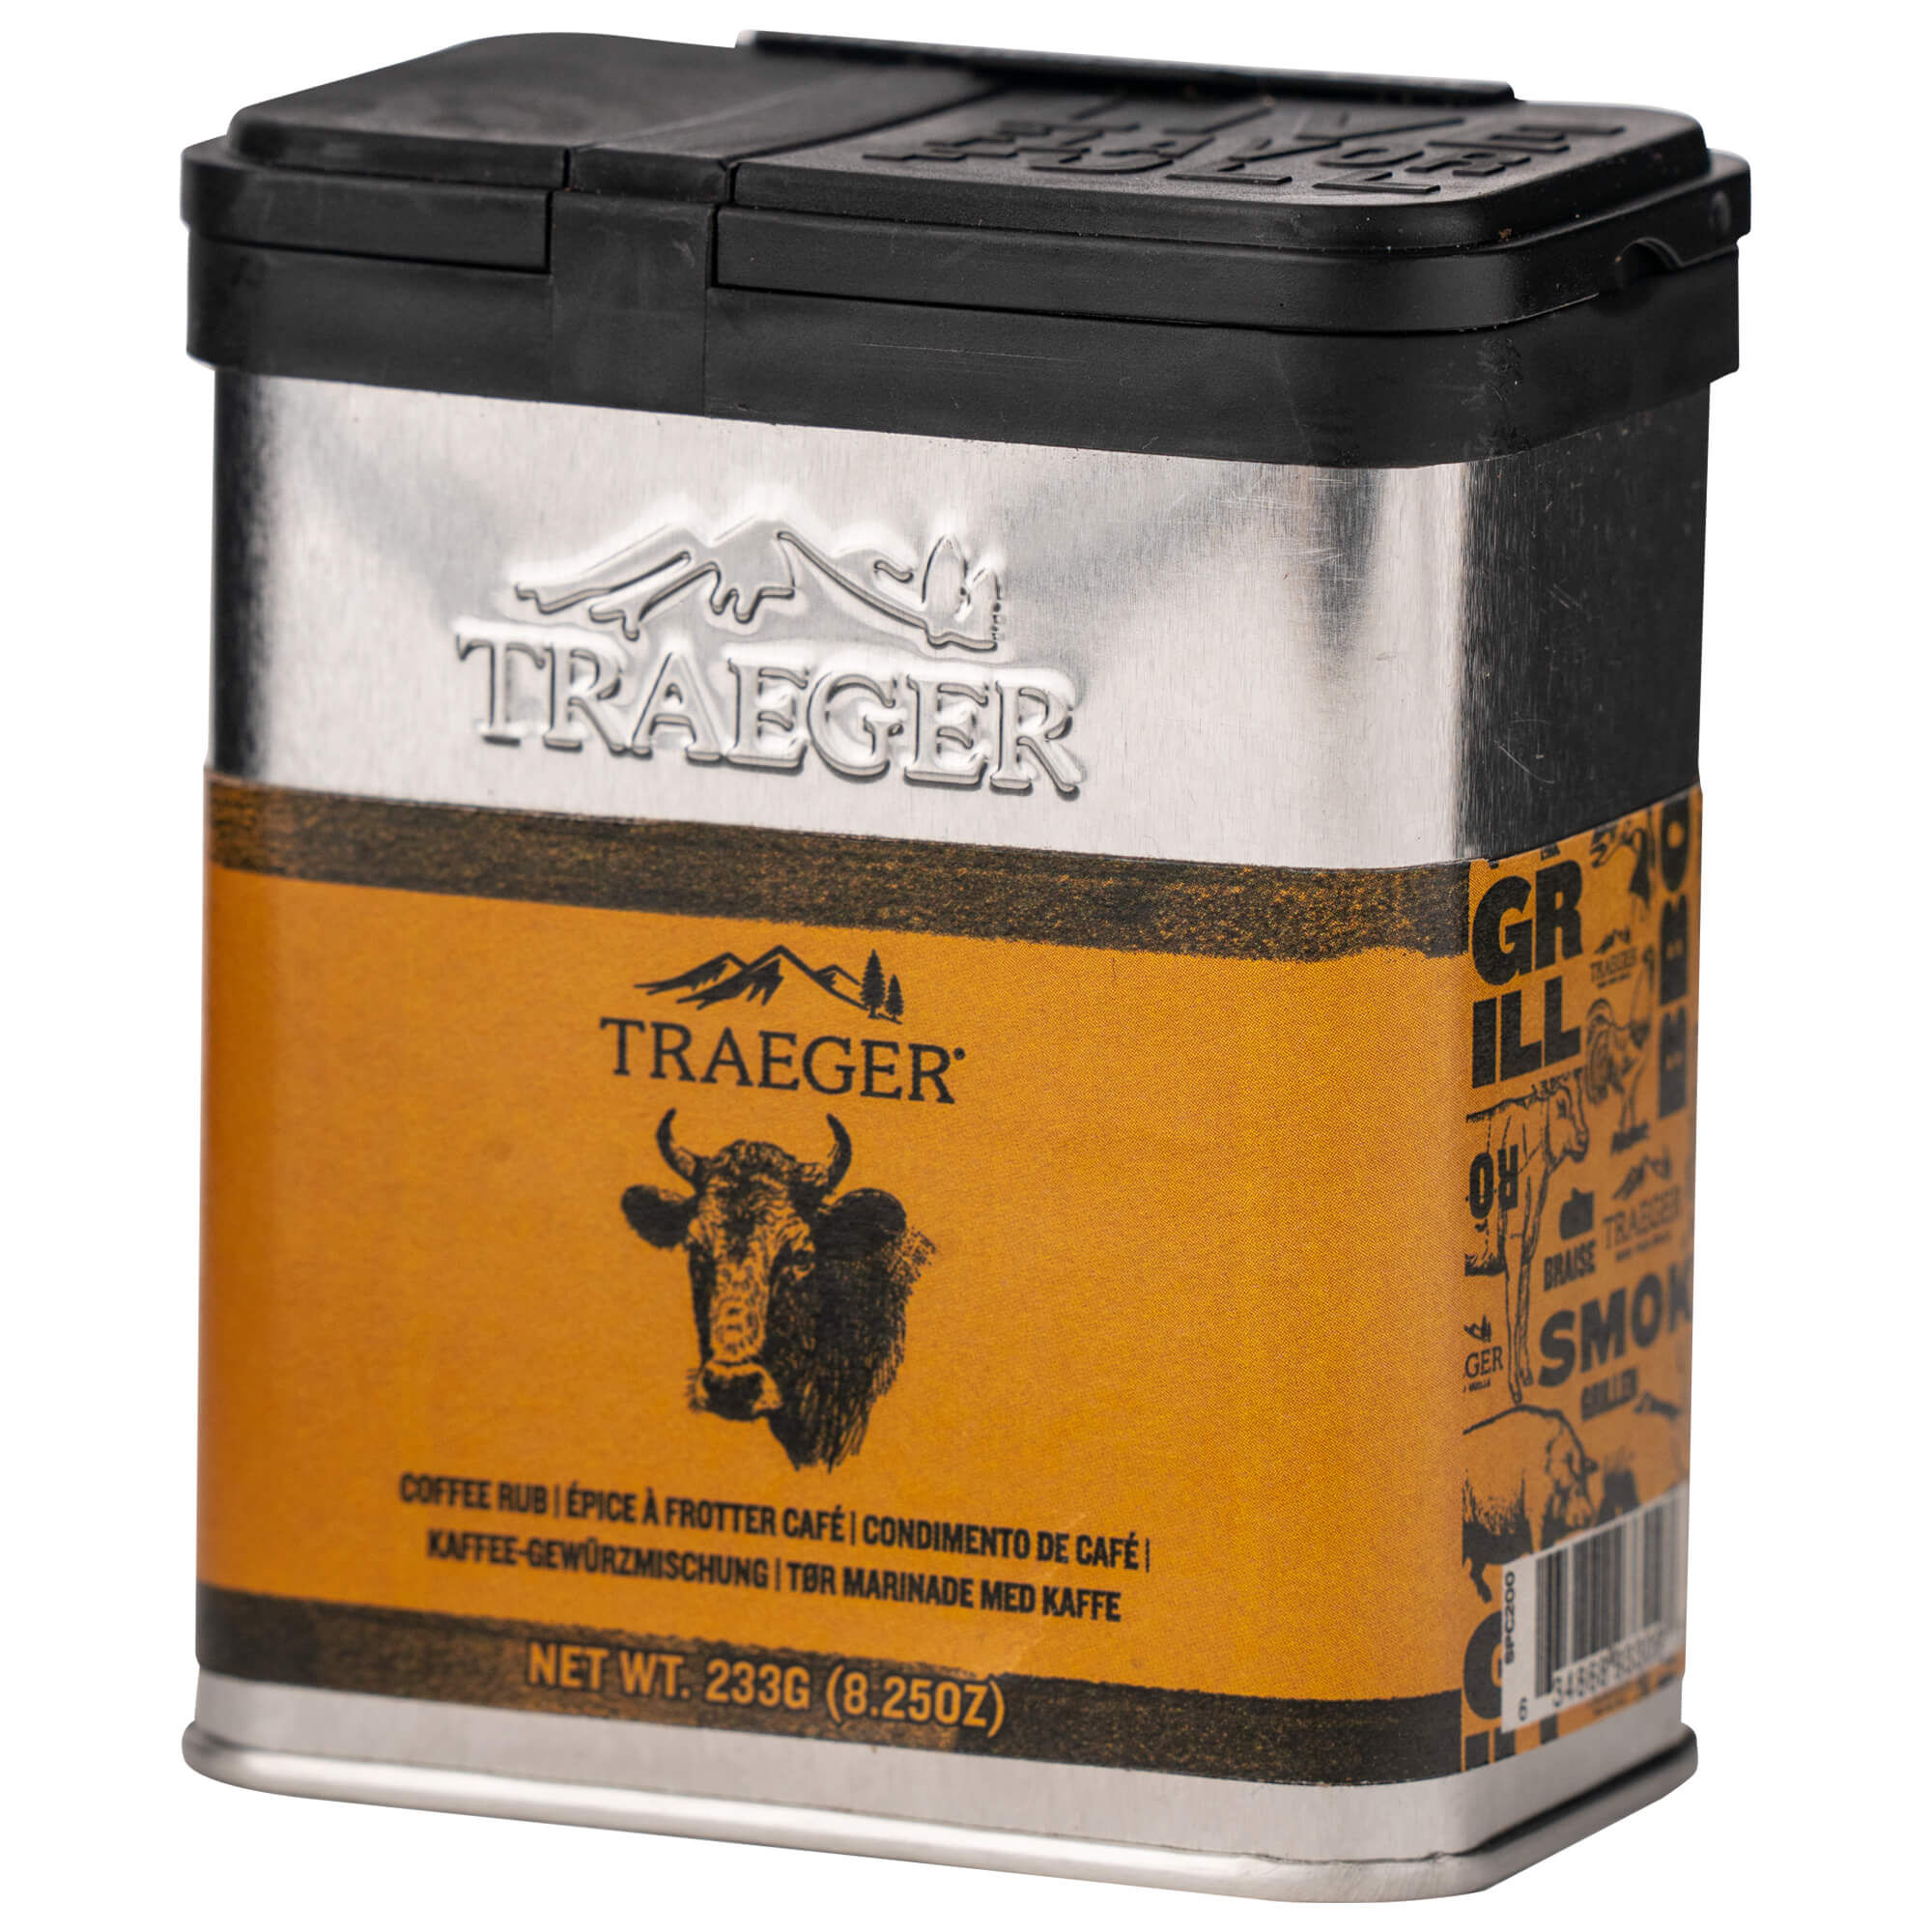 Traeger Coffee Rub 234g